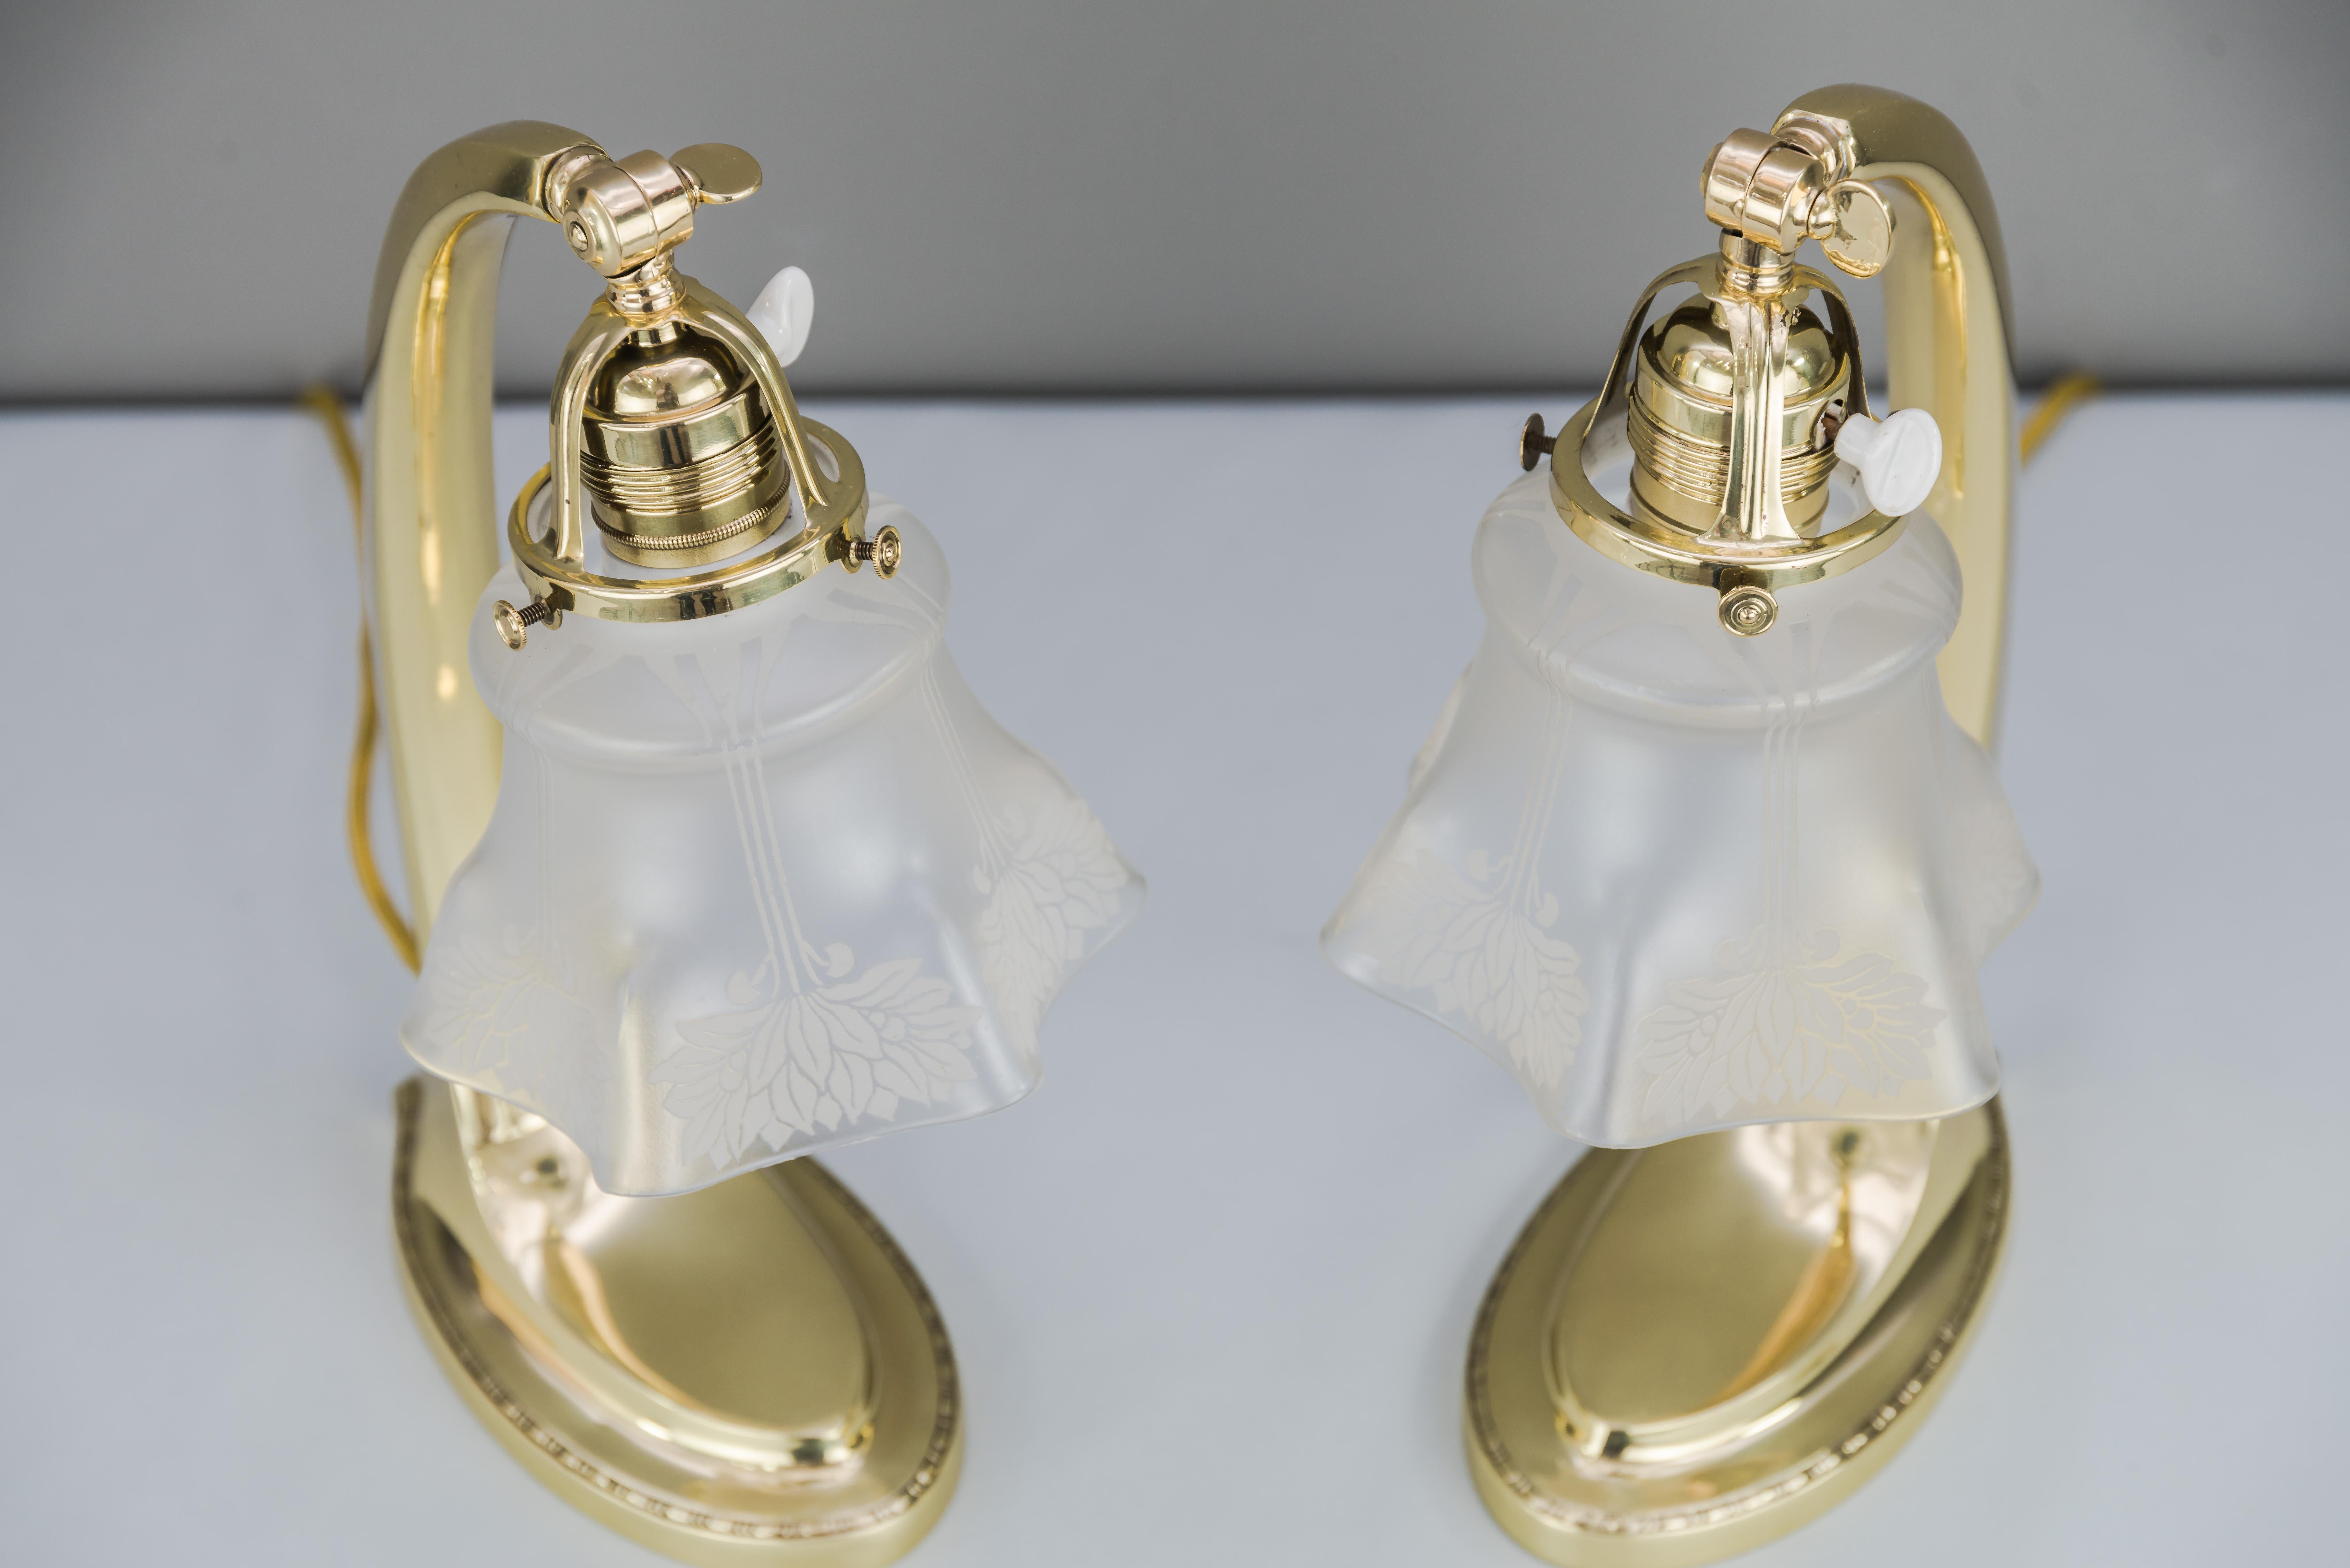 Deux lampes de table Jugendstil 1907 avec abat-jour en verre d'origine
Polis et émaillés au four.